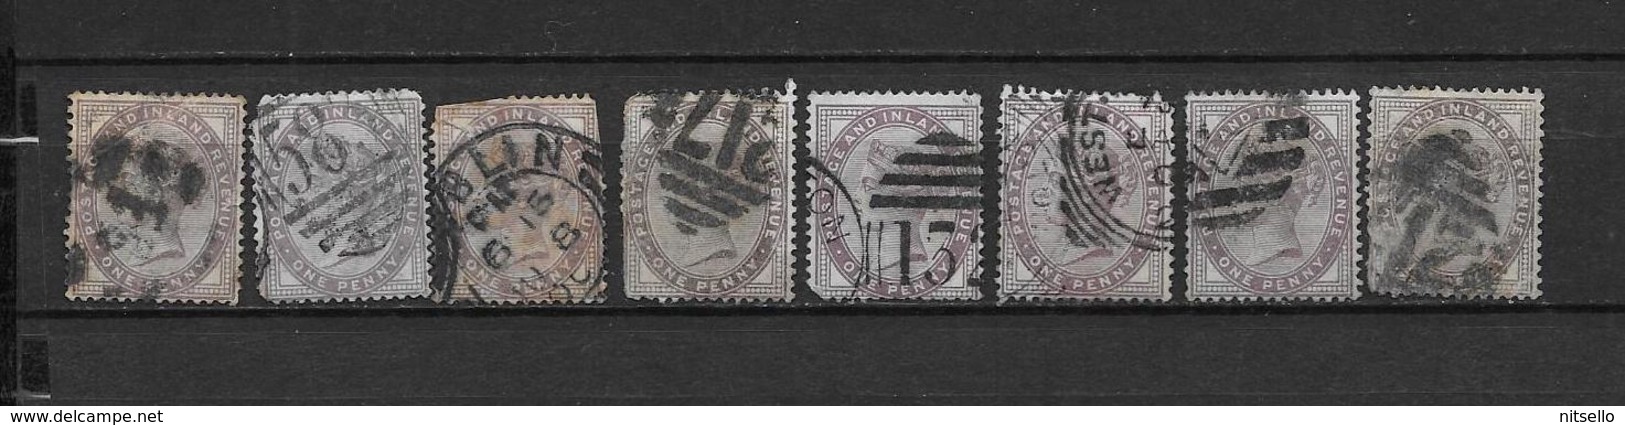 LOTE 1883  ///  GRAN BRETAÑA    -  YVERT Nº:  73  LOTE CON DEFECTOS   ¡¡¡ LIQUIDATION !!! - Used Stamps